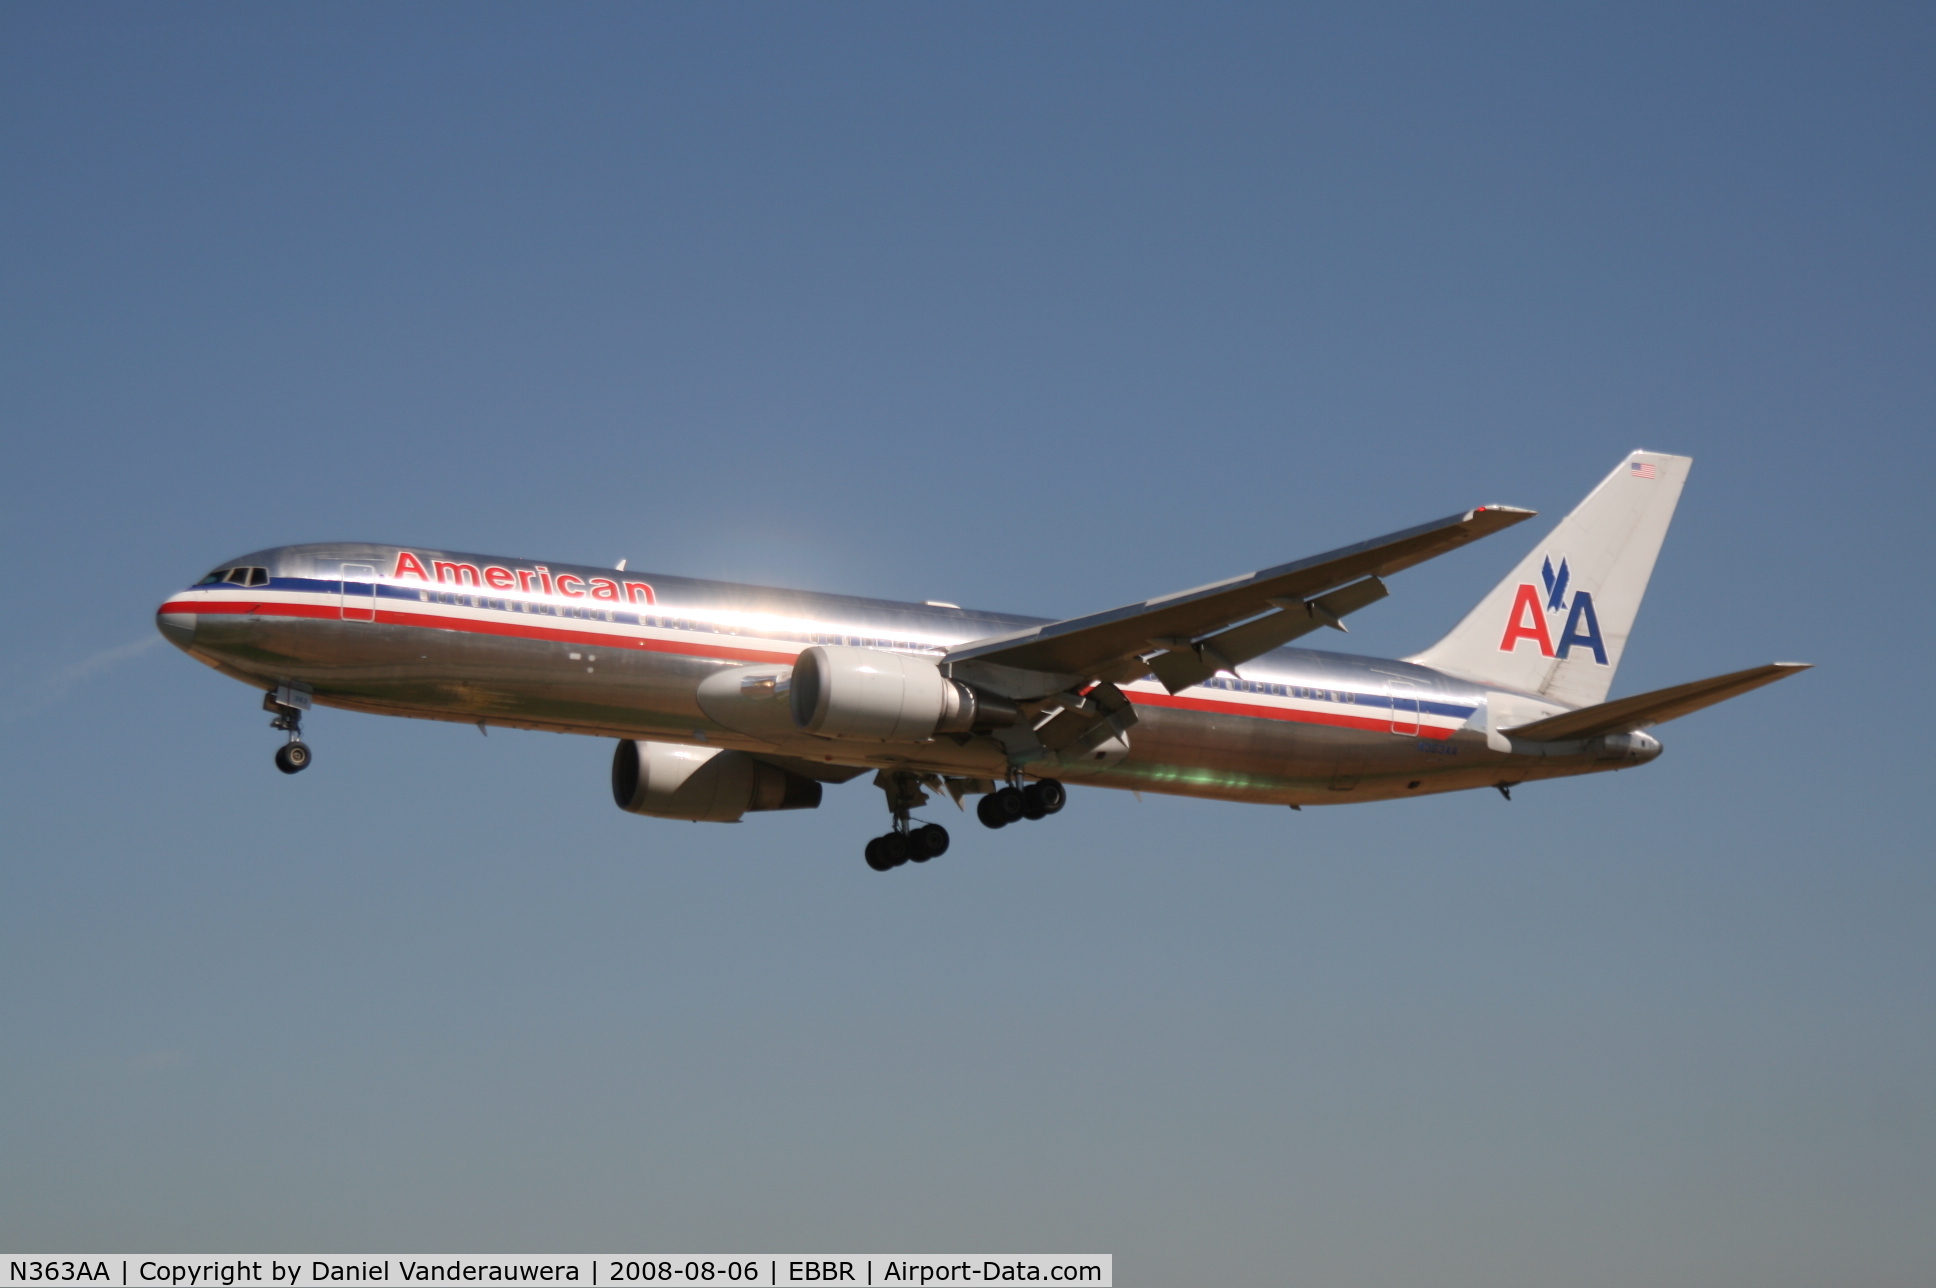 N363AA, 1988 Boeing 767-323 C/N 24044, arrival of flight AA088 to rwy 25L